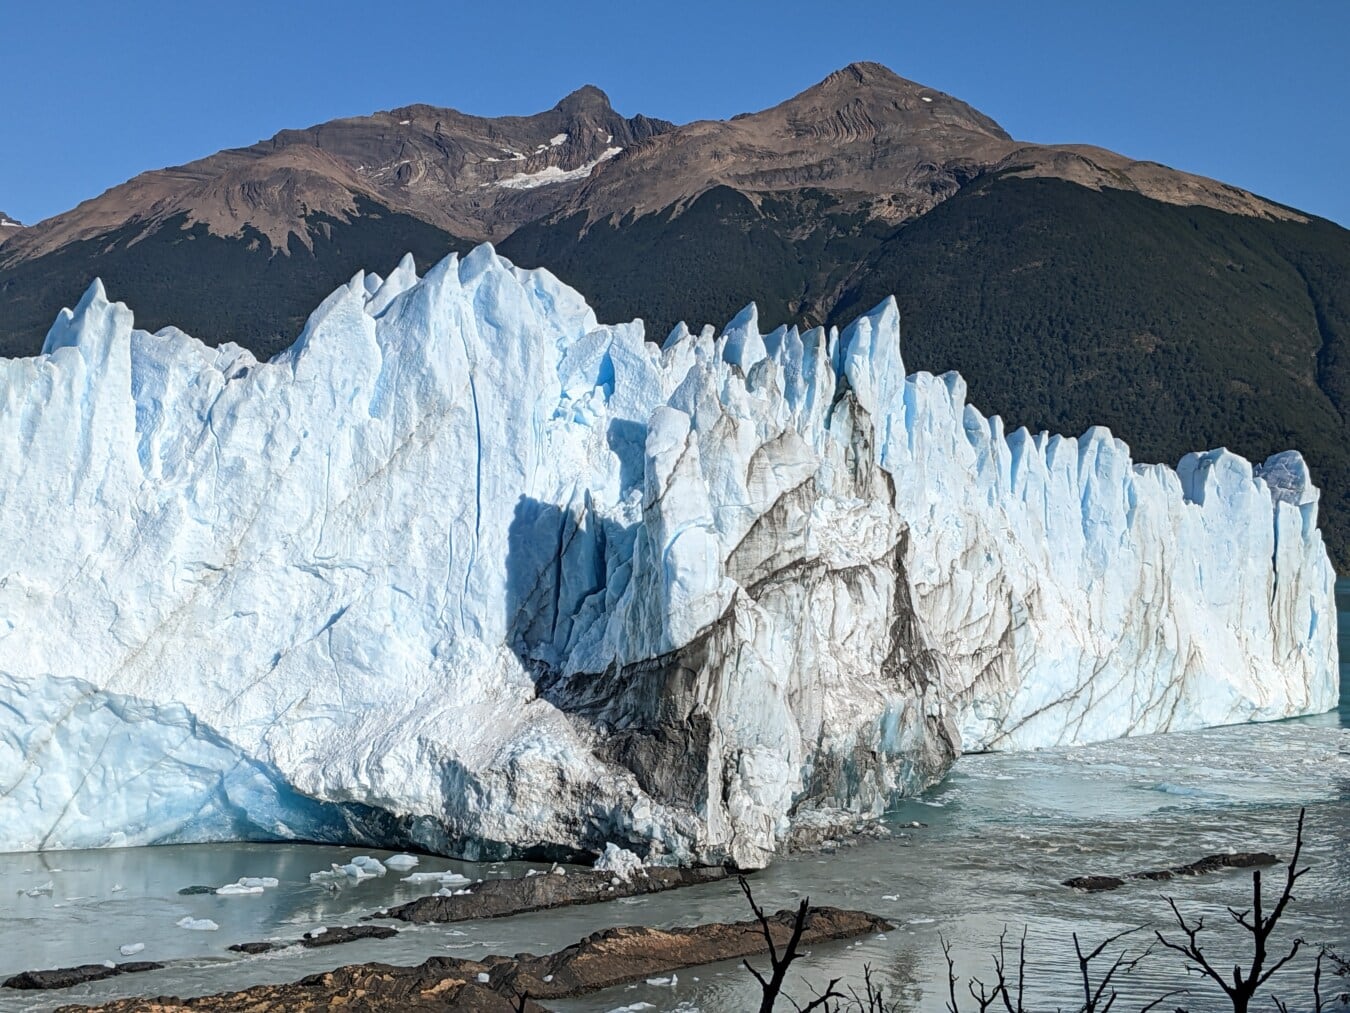 Glacier, gros, flanc de la montagne, congelés, cristal de glace, eau froide, Parc national, iceberg, glace, paysage